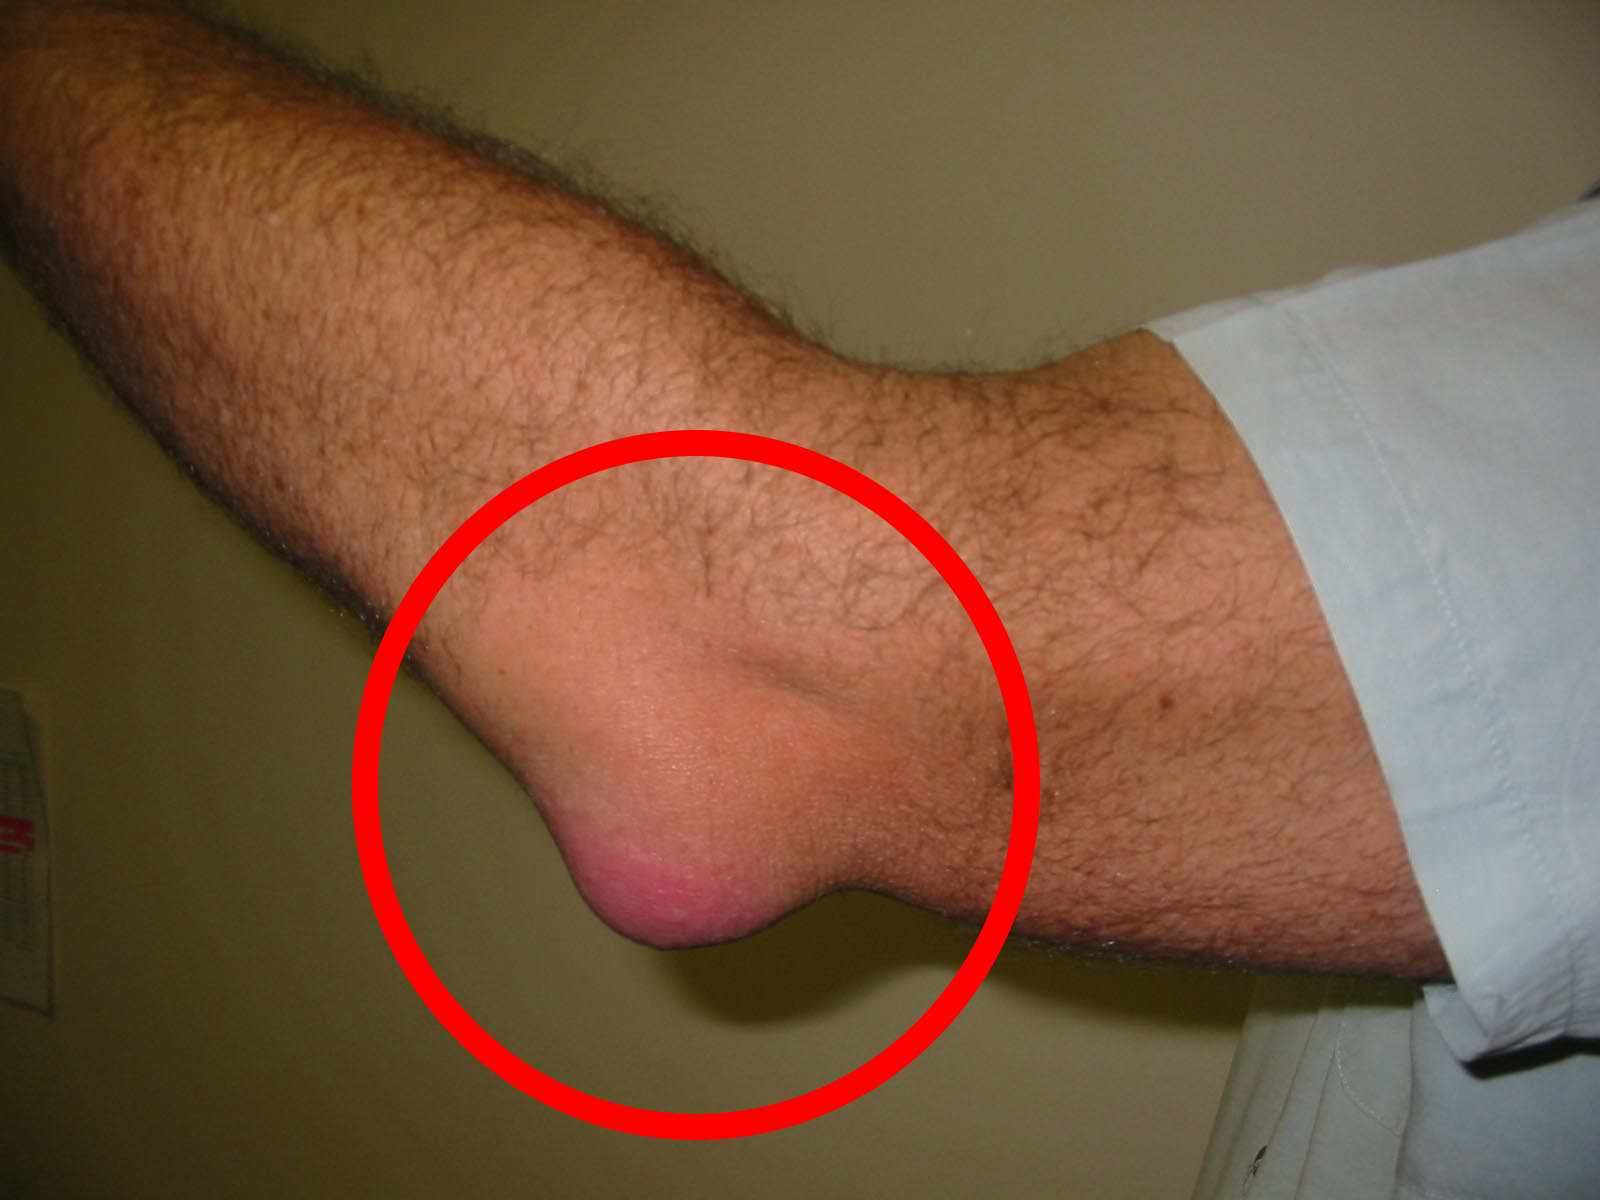 Gezwollen voeten: 9 alarmerende tekenen die je nooit mag negeren